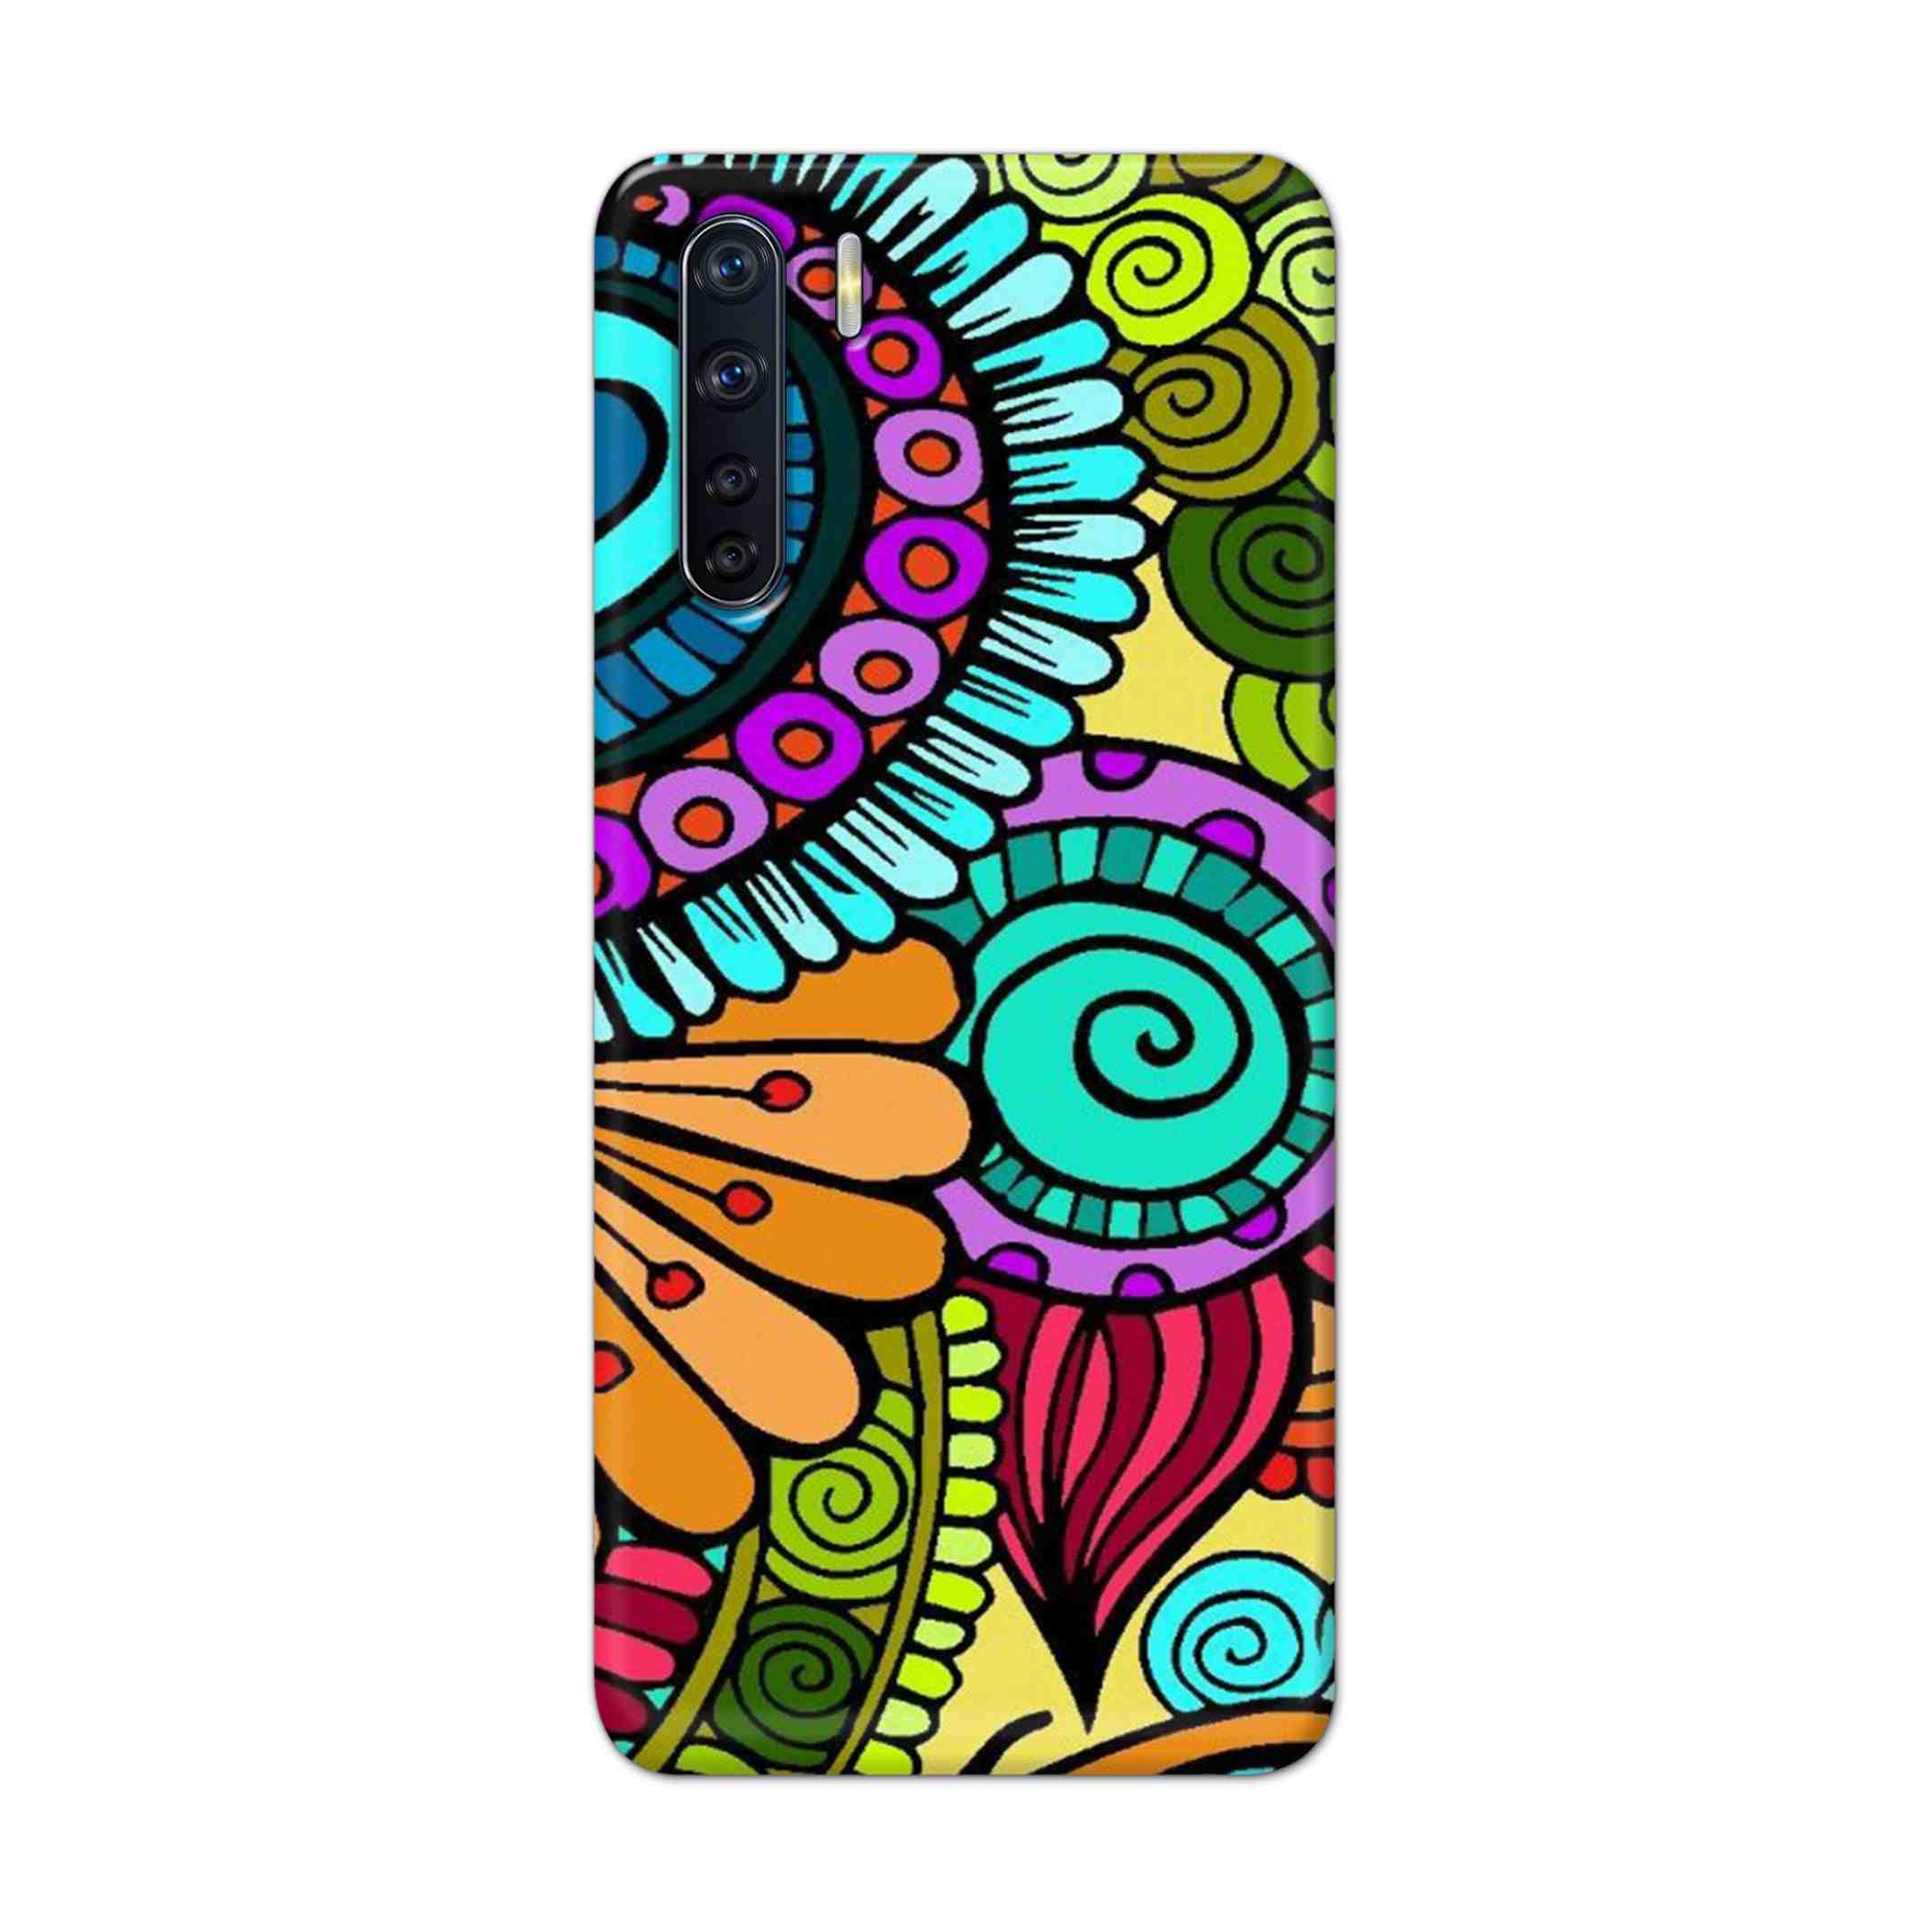 Buy The Kalachakra Mandala Hard Back Mobile Phone Case Cover For OPPO F15 Online